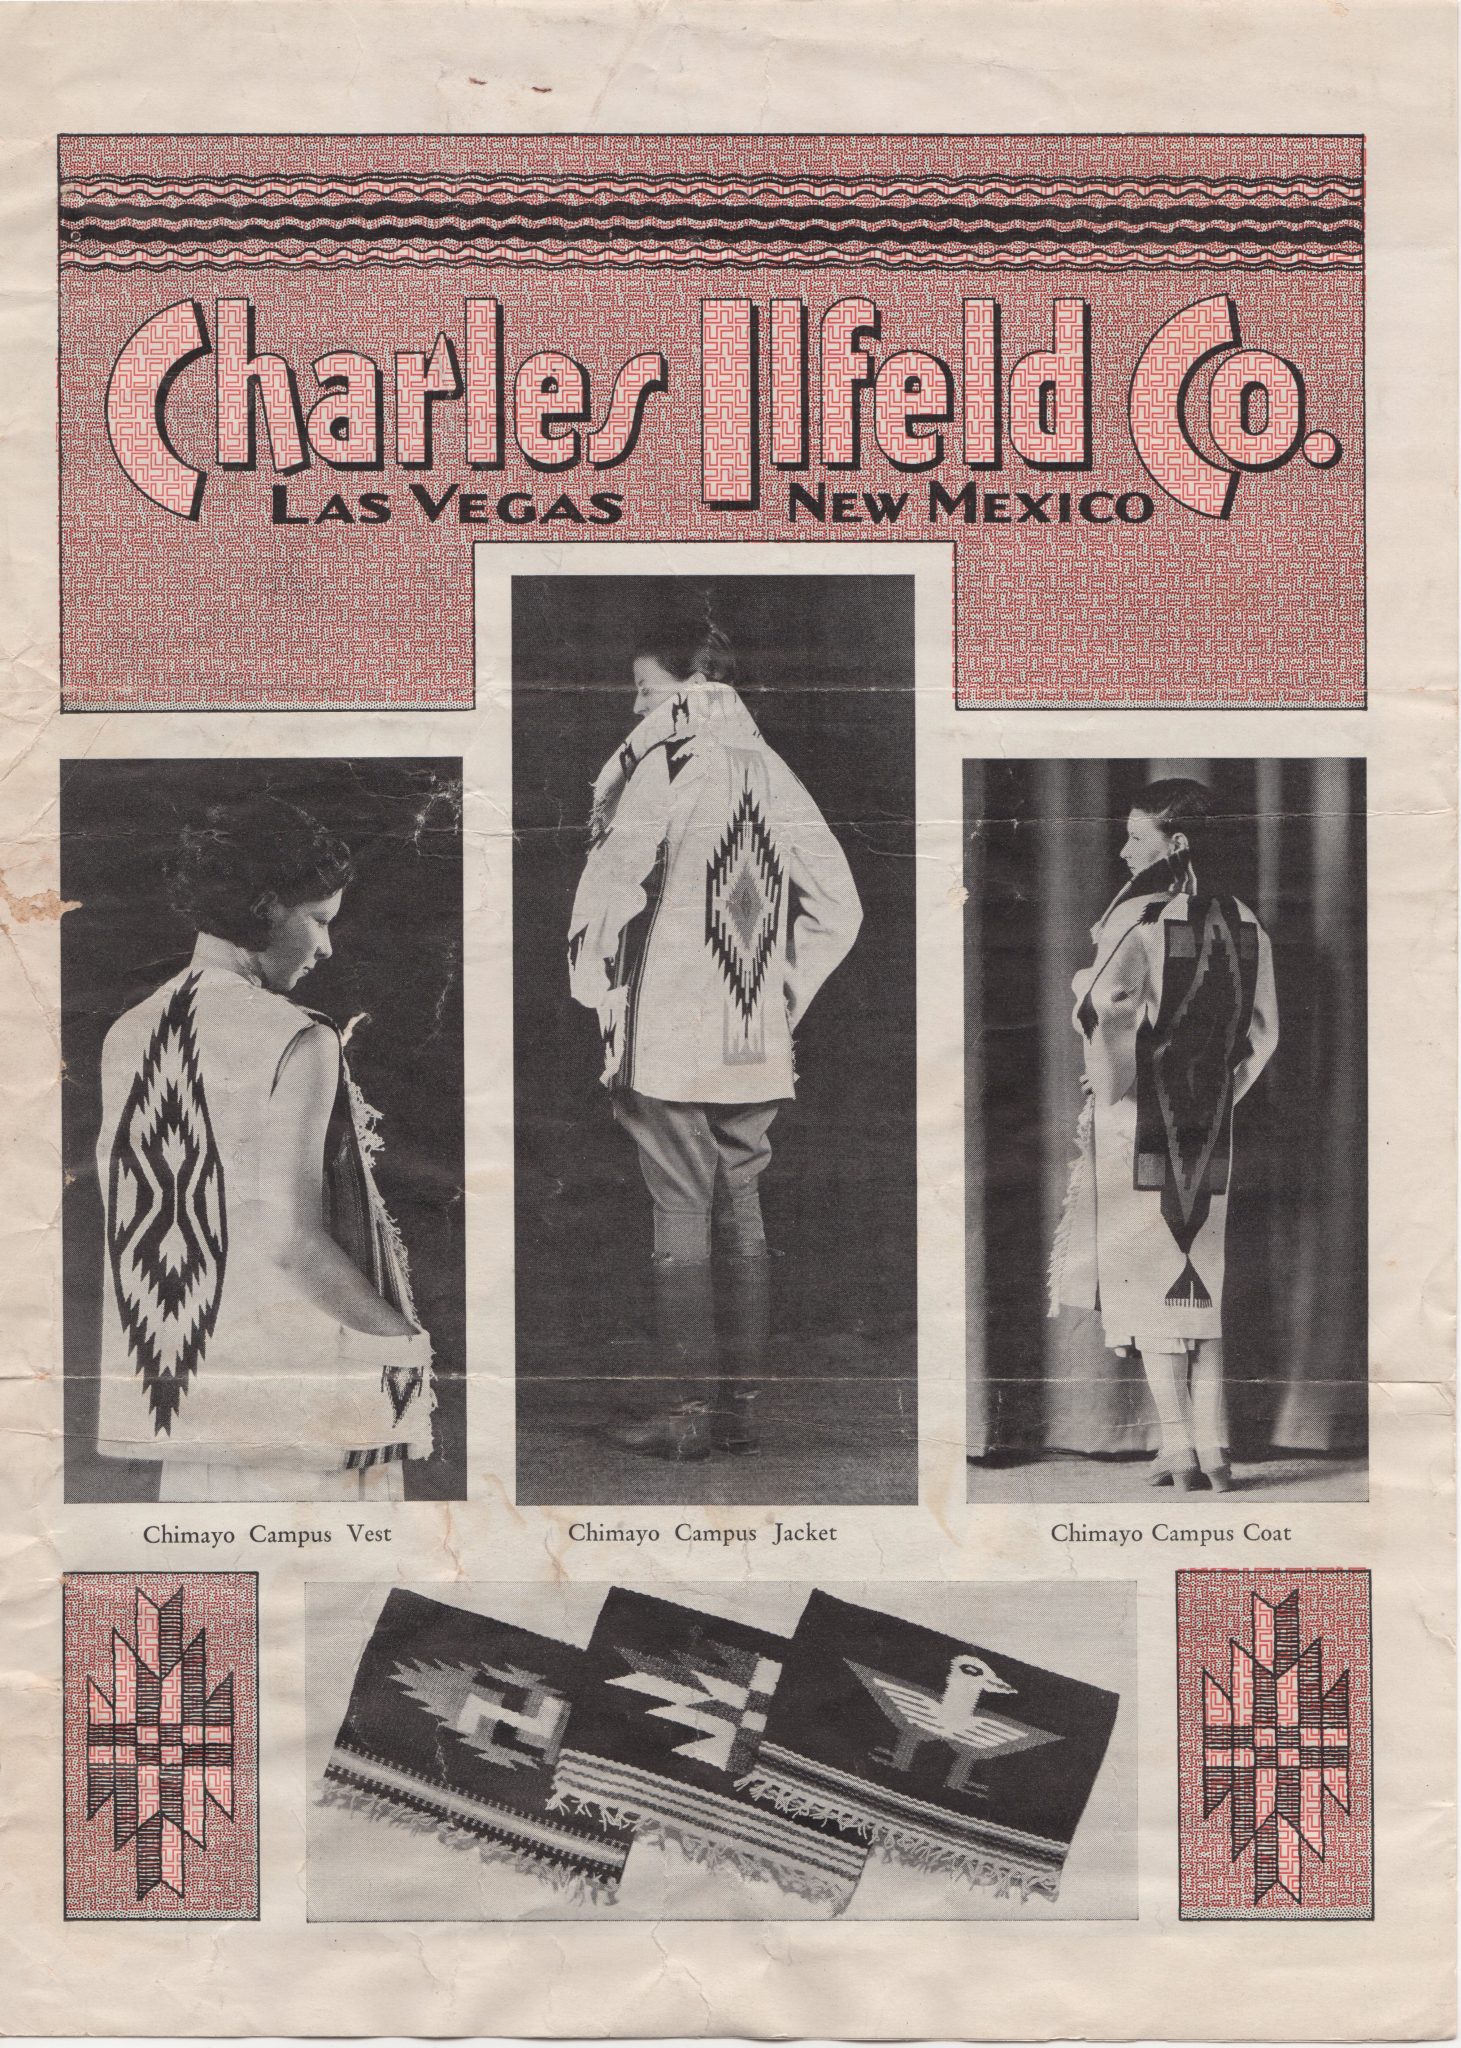 Charles Iifeld Co. Las Vegas, N.M.